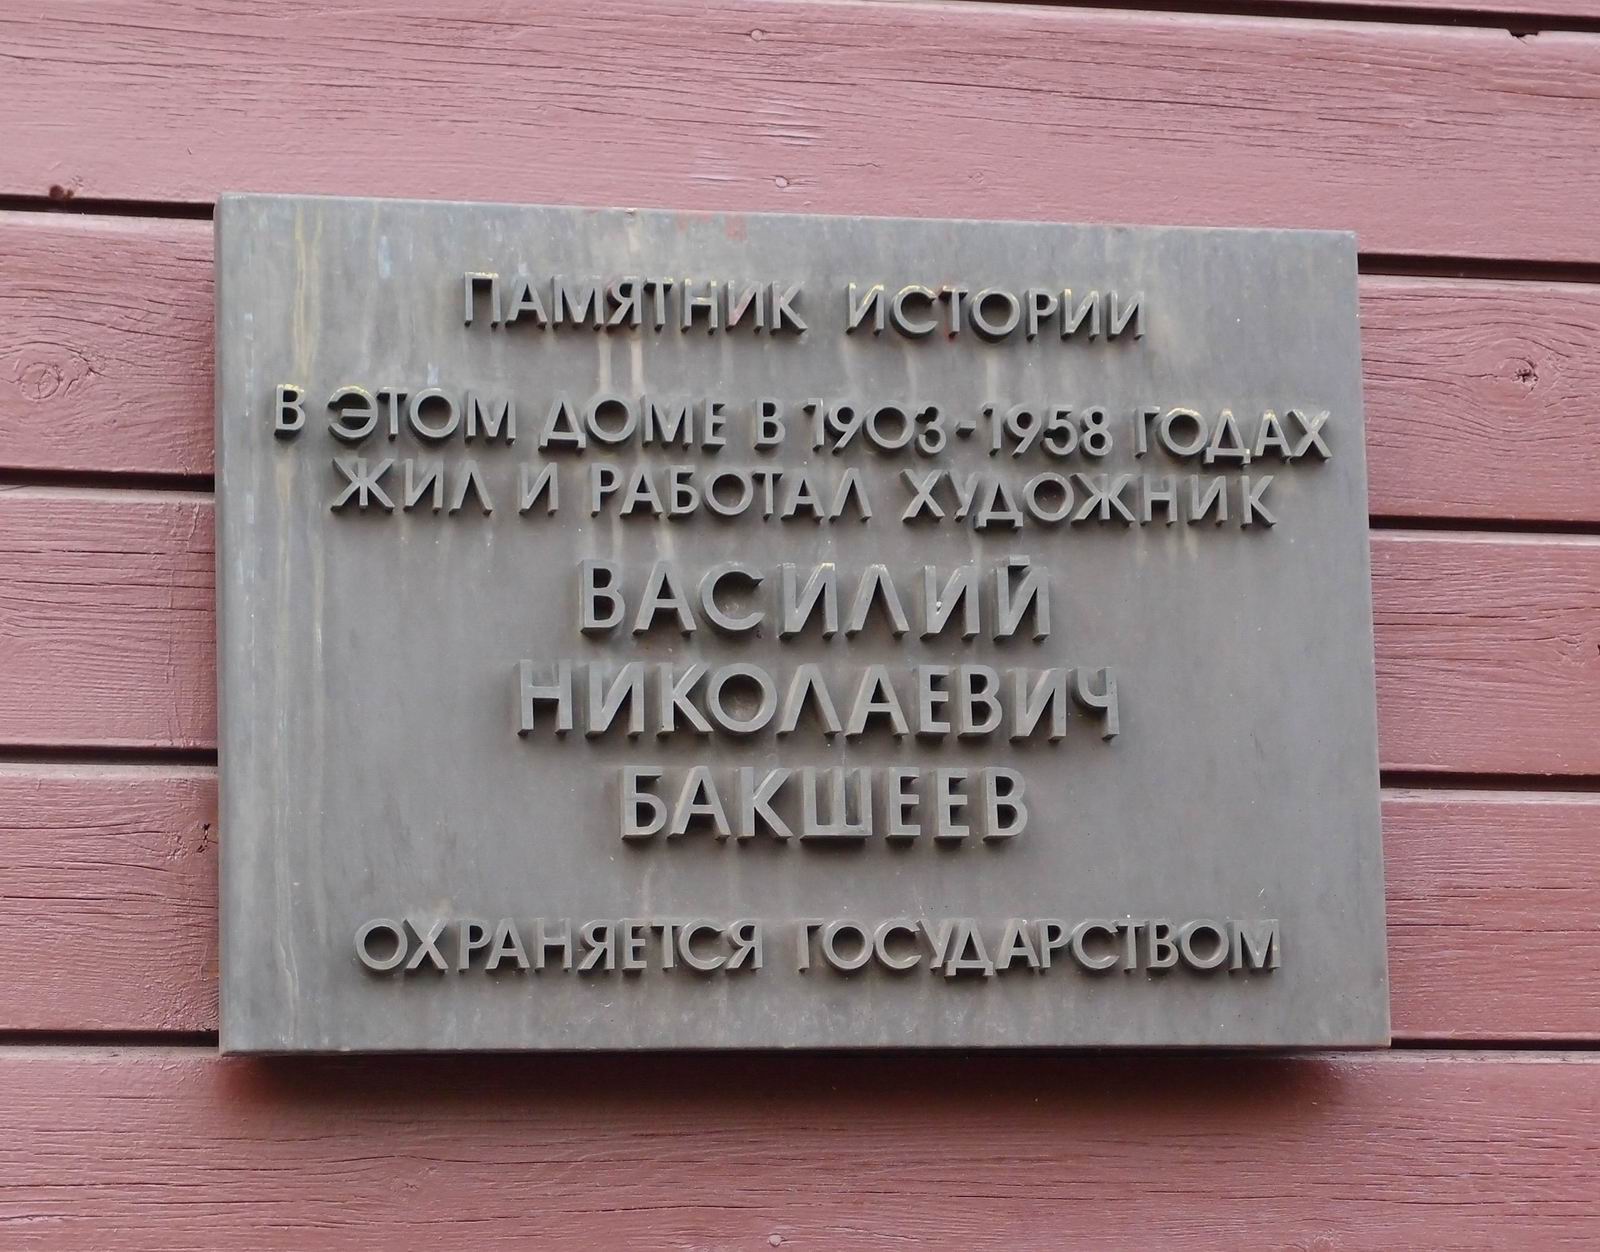 Охранная доска на доме в 4-м Ростовском переулке, дом 6, где жил Бакшеев В.Н.